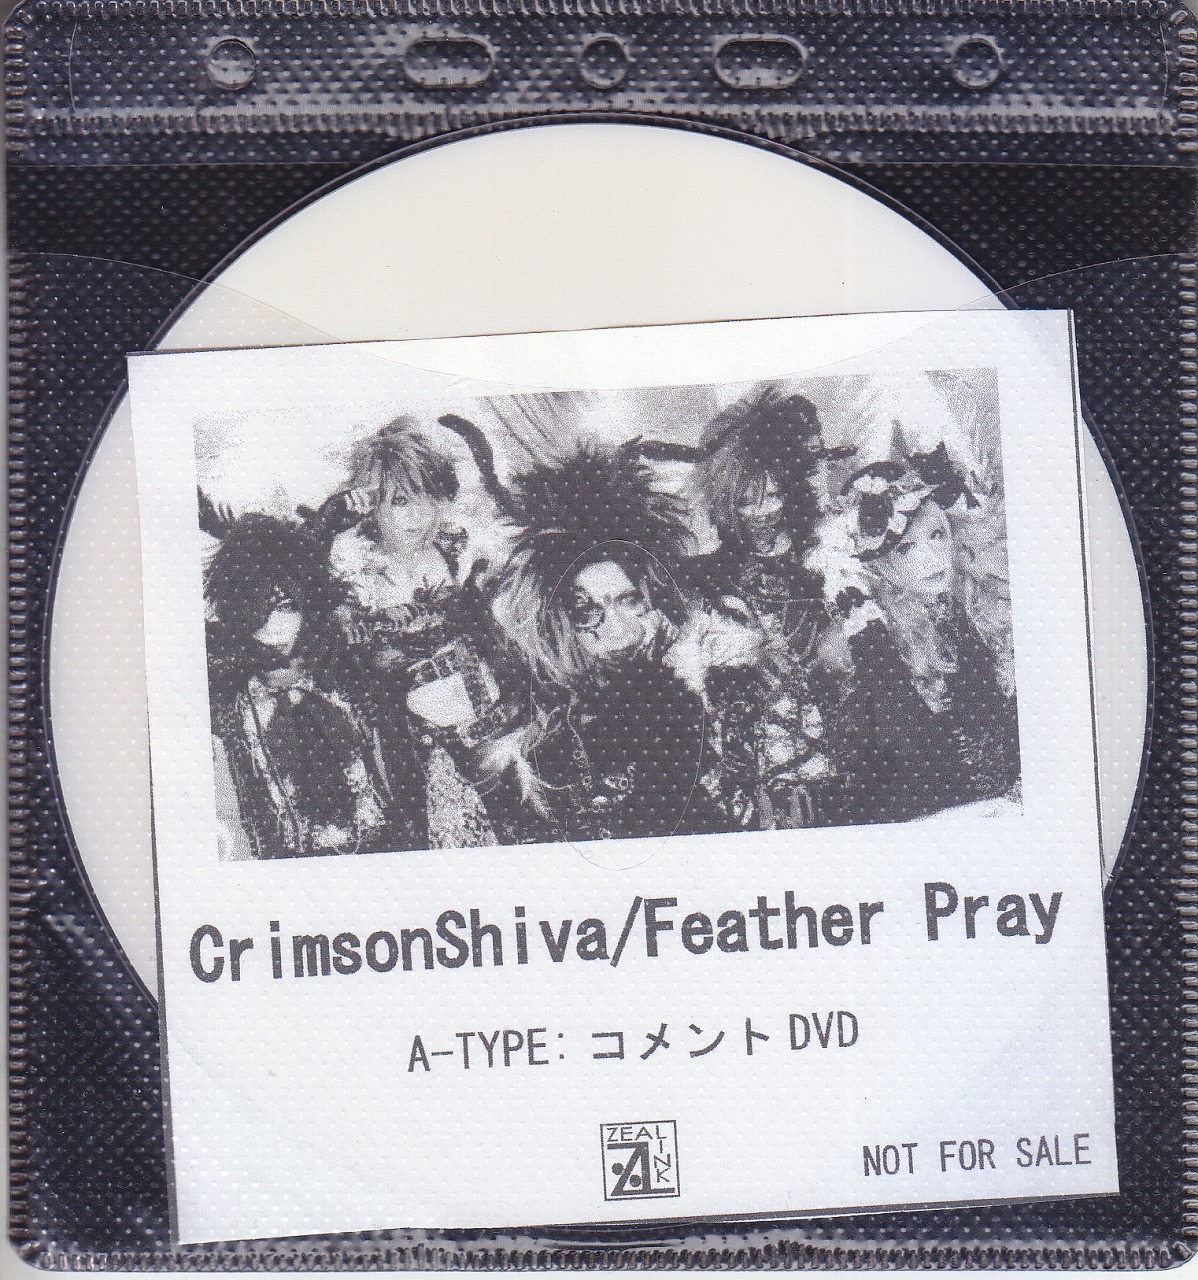 Crimson Shiva ( クリムゾンシヴァ )  の DVD 【ZEAL LINK】Feather Pray A-TYPE:コメントDVD